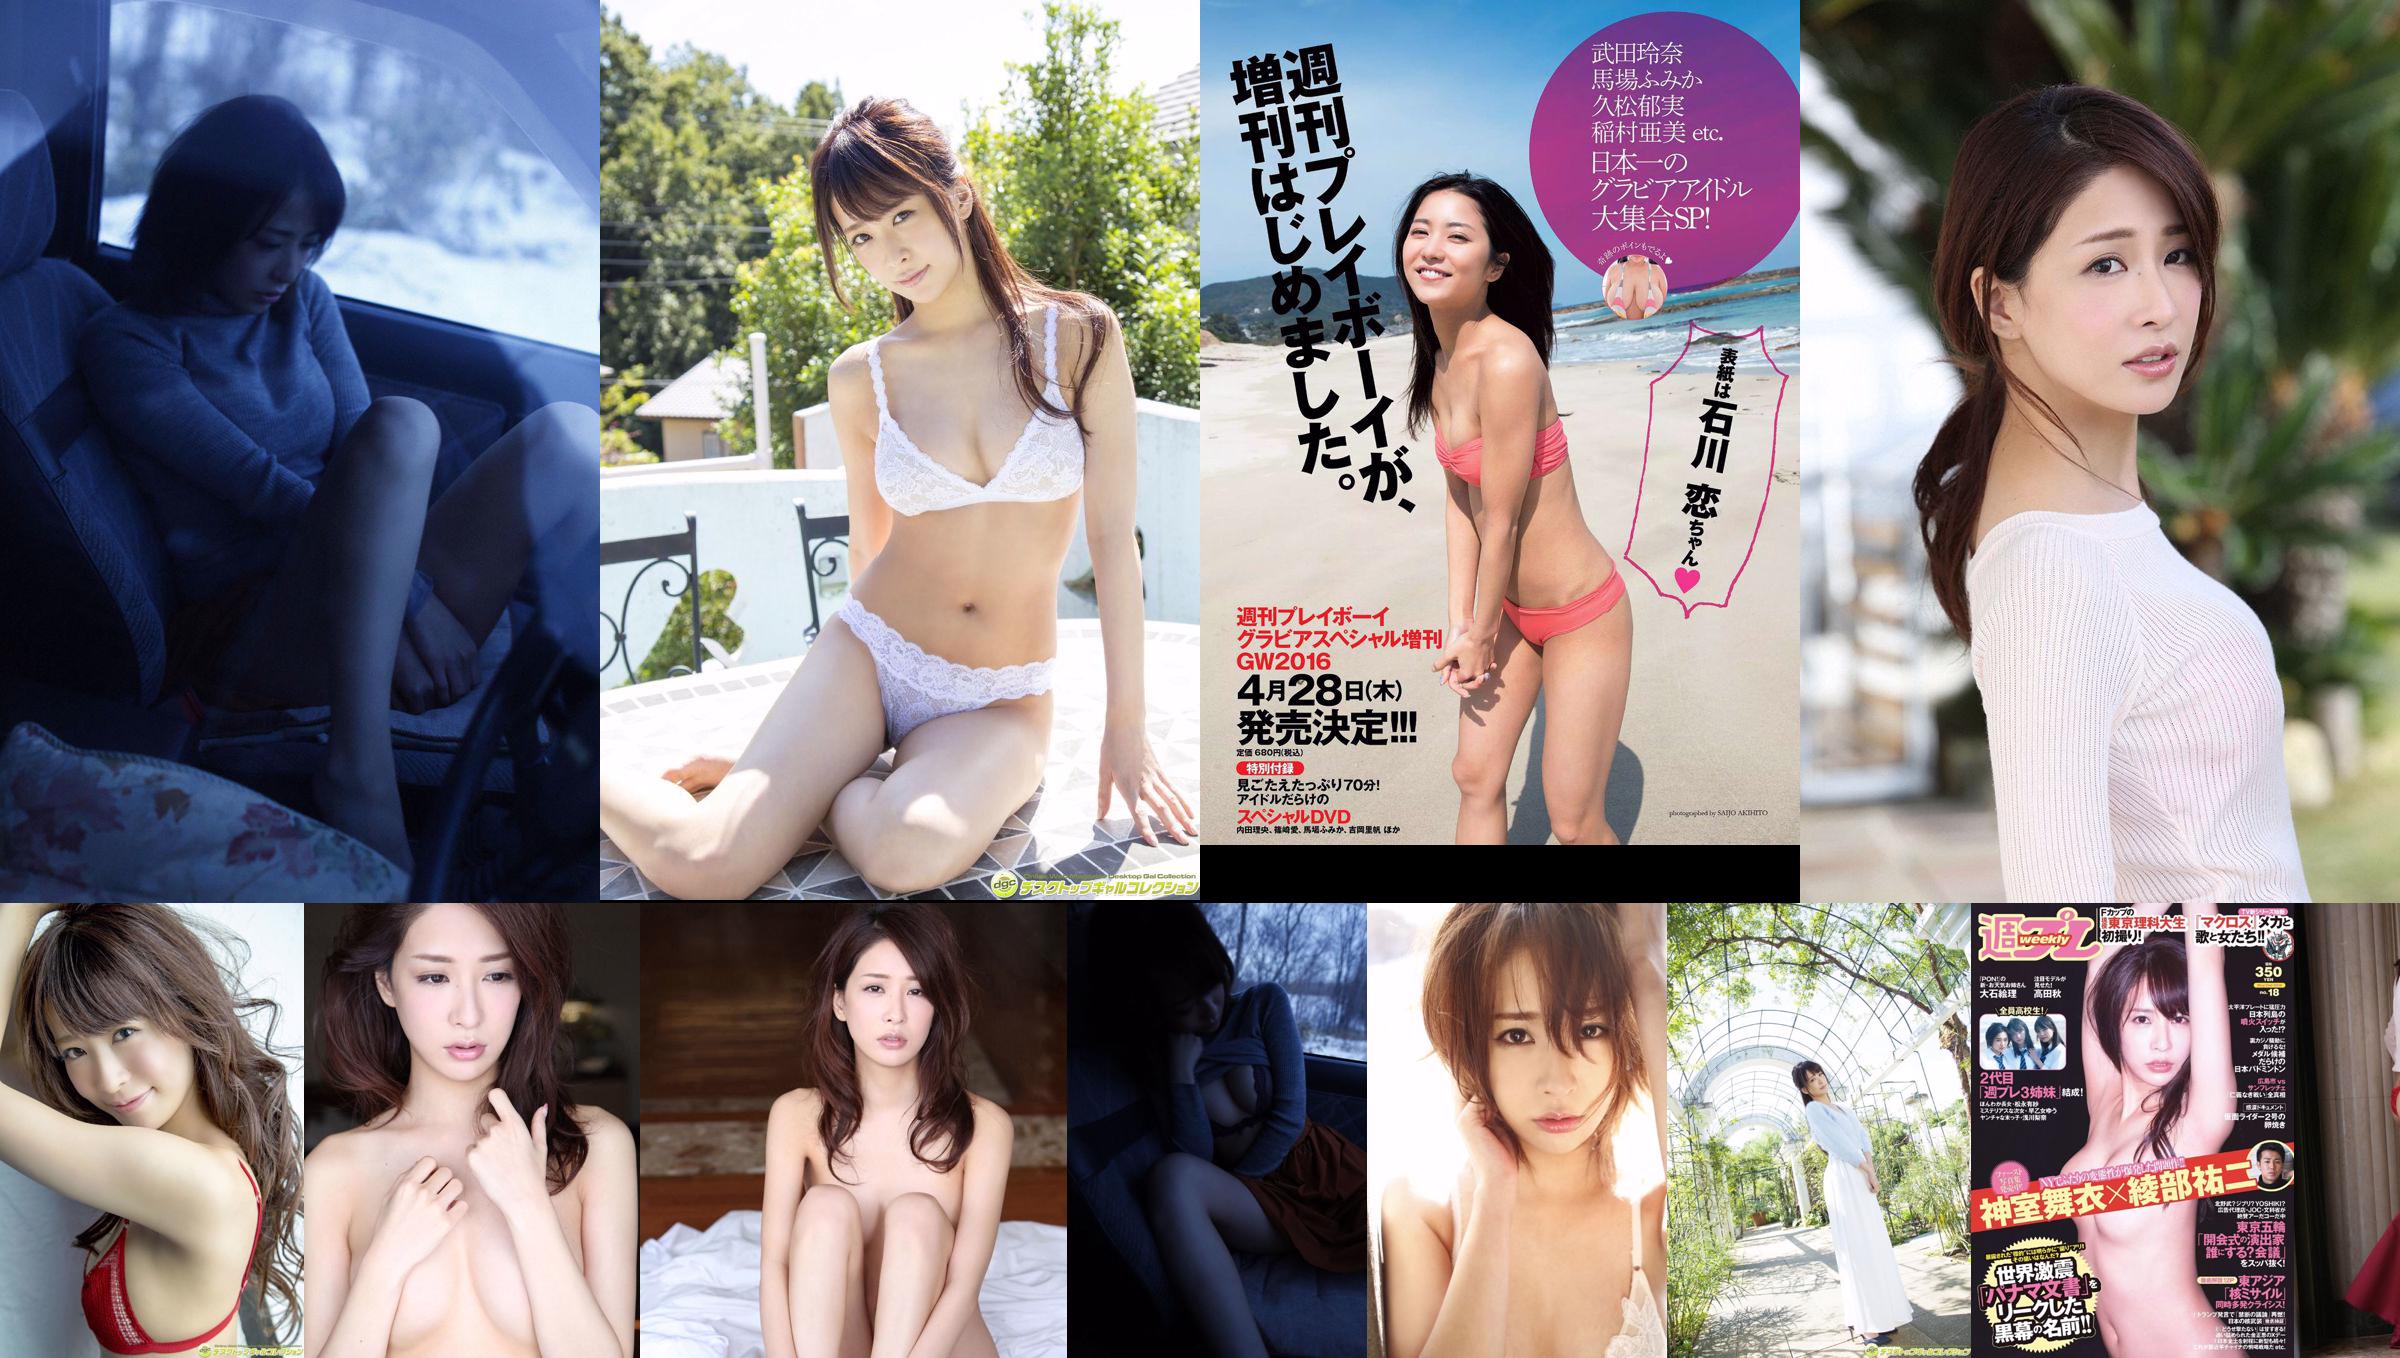 Mai Kamuro Arisa Matsunaga Yu Saotome Rina Asakawa Shu Takada Ayana Takeda Eri Oishi [wekelijkse Playboy] 2016 nr 18 foto No.ed2c51 Pagina 3